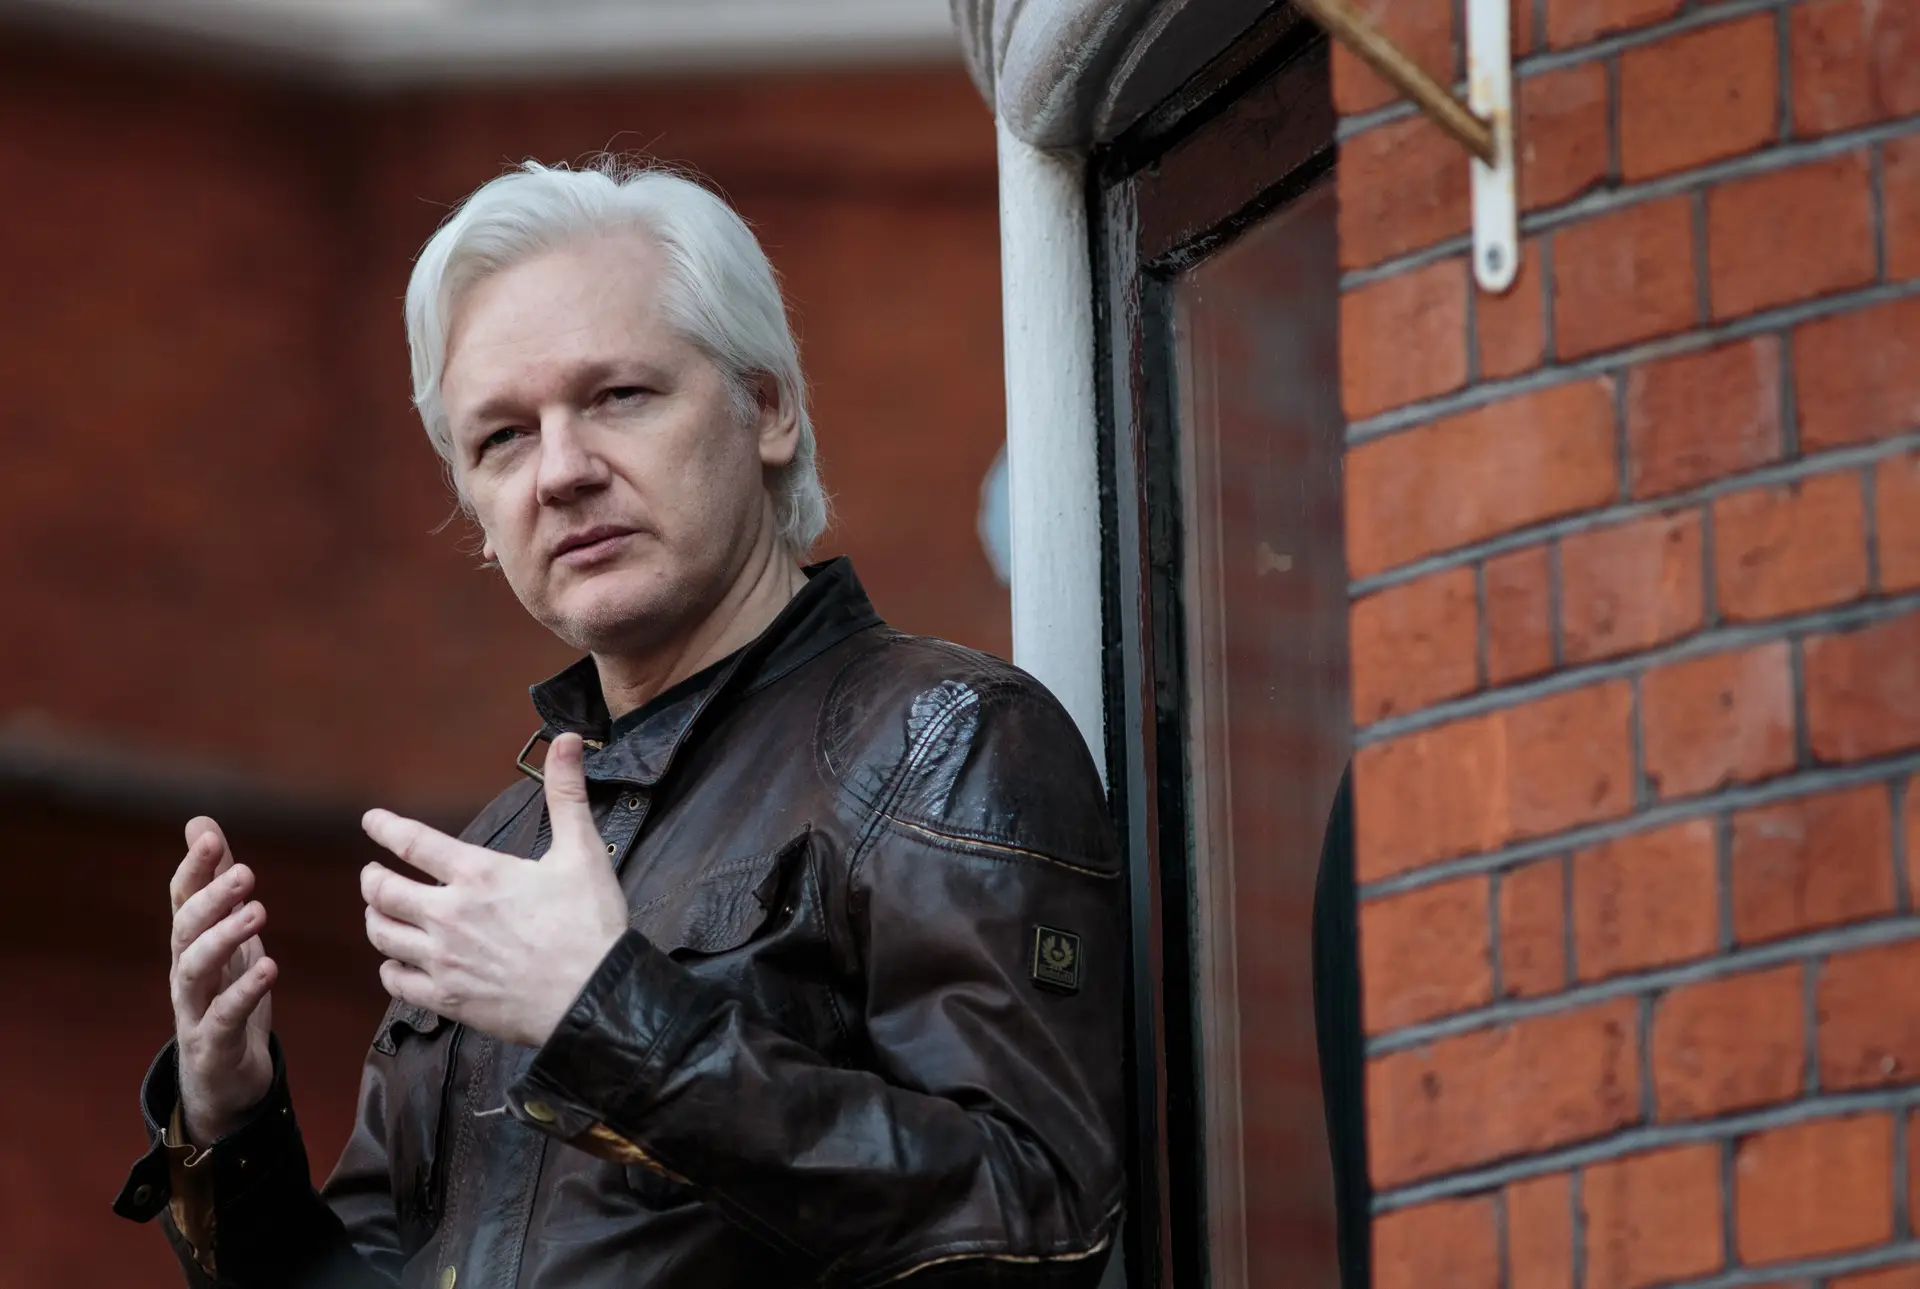 Anistia Internacional "raras notícias positivas" não é o caso de Julian Assange